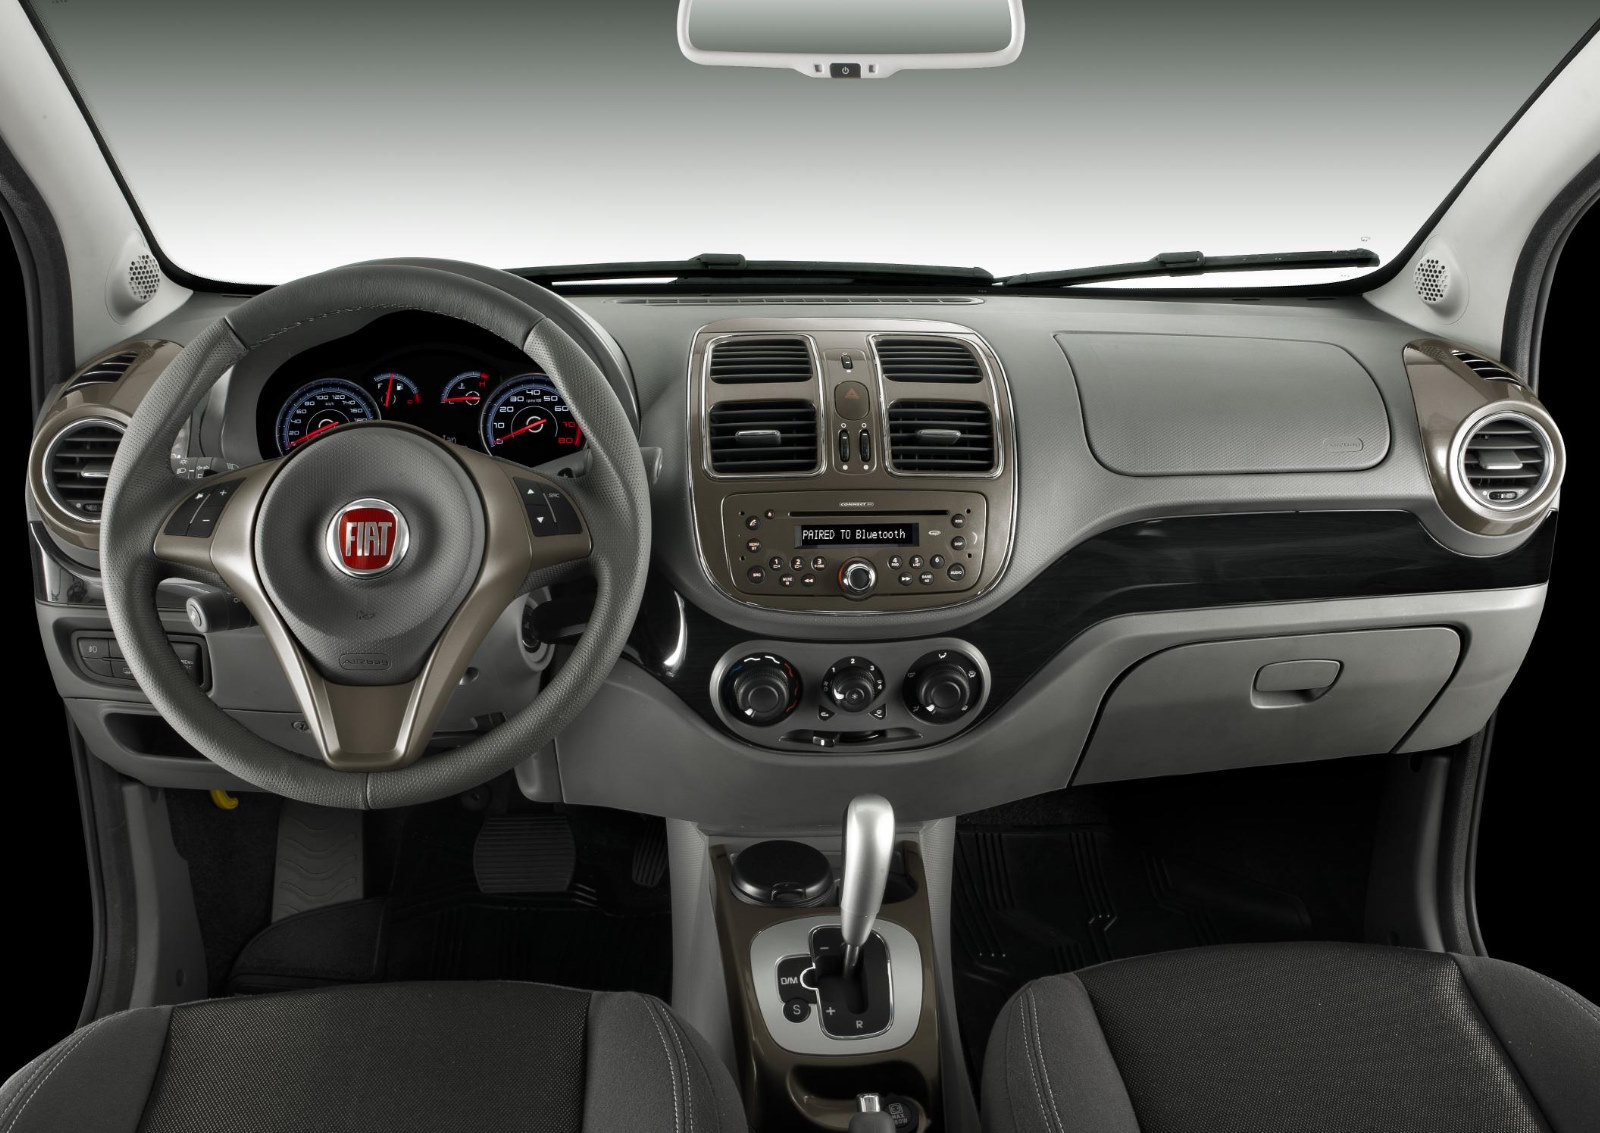 Interiorul lui Fiat Grand Siena este simplist, dar ergonomic